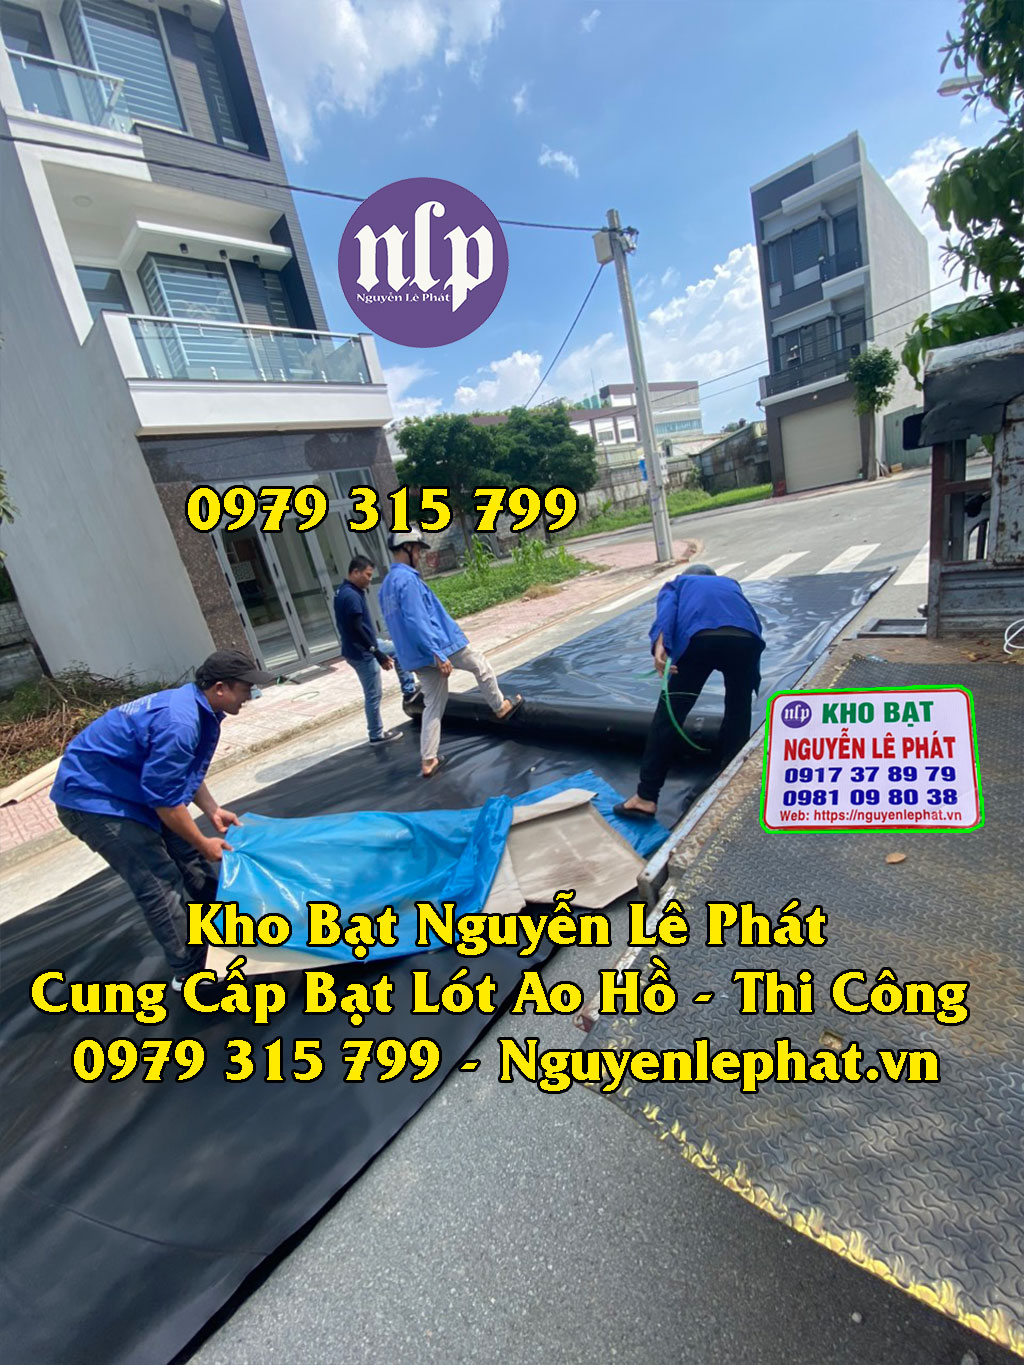 Giá bạt lót hồ chứa nước Bình Thuận